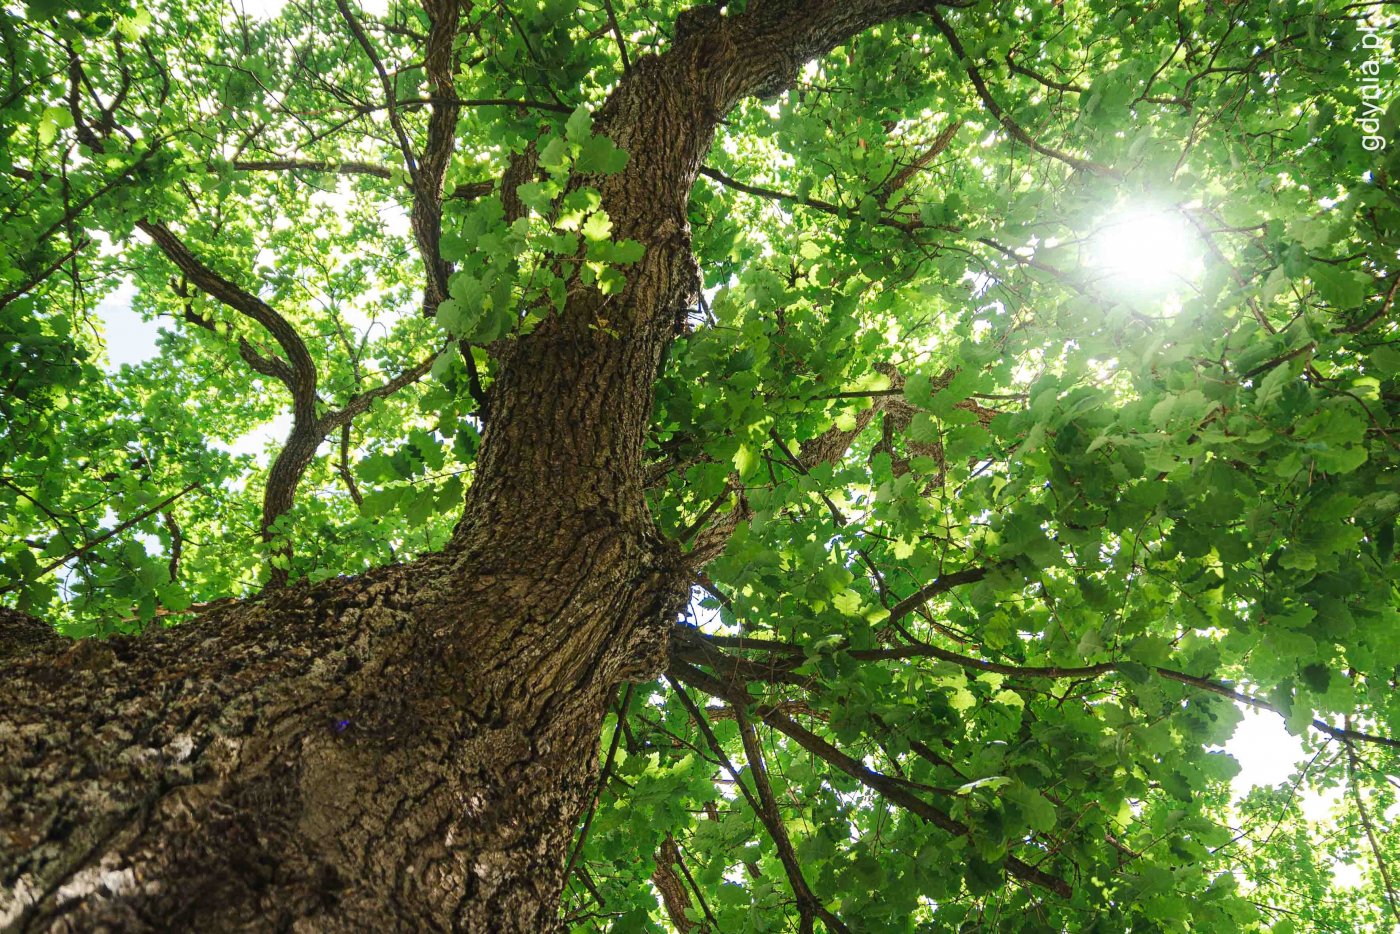 Pień drzewa - dębu widziany od dołu, widoczne konary, zielone liście, kora drzewa, u góry przez liście prześwituje słońce